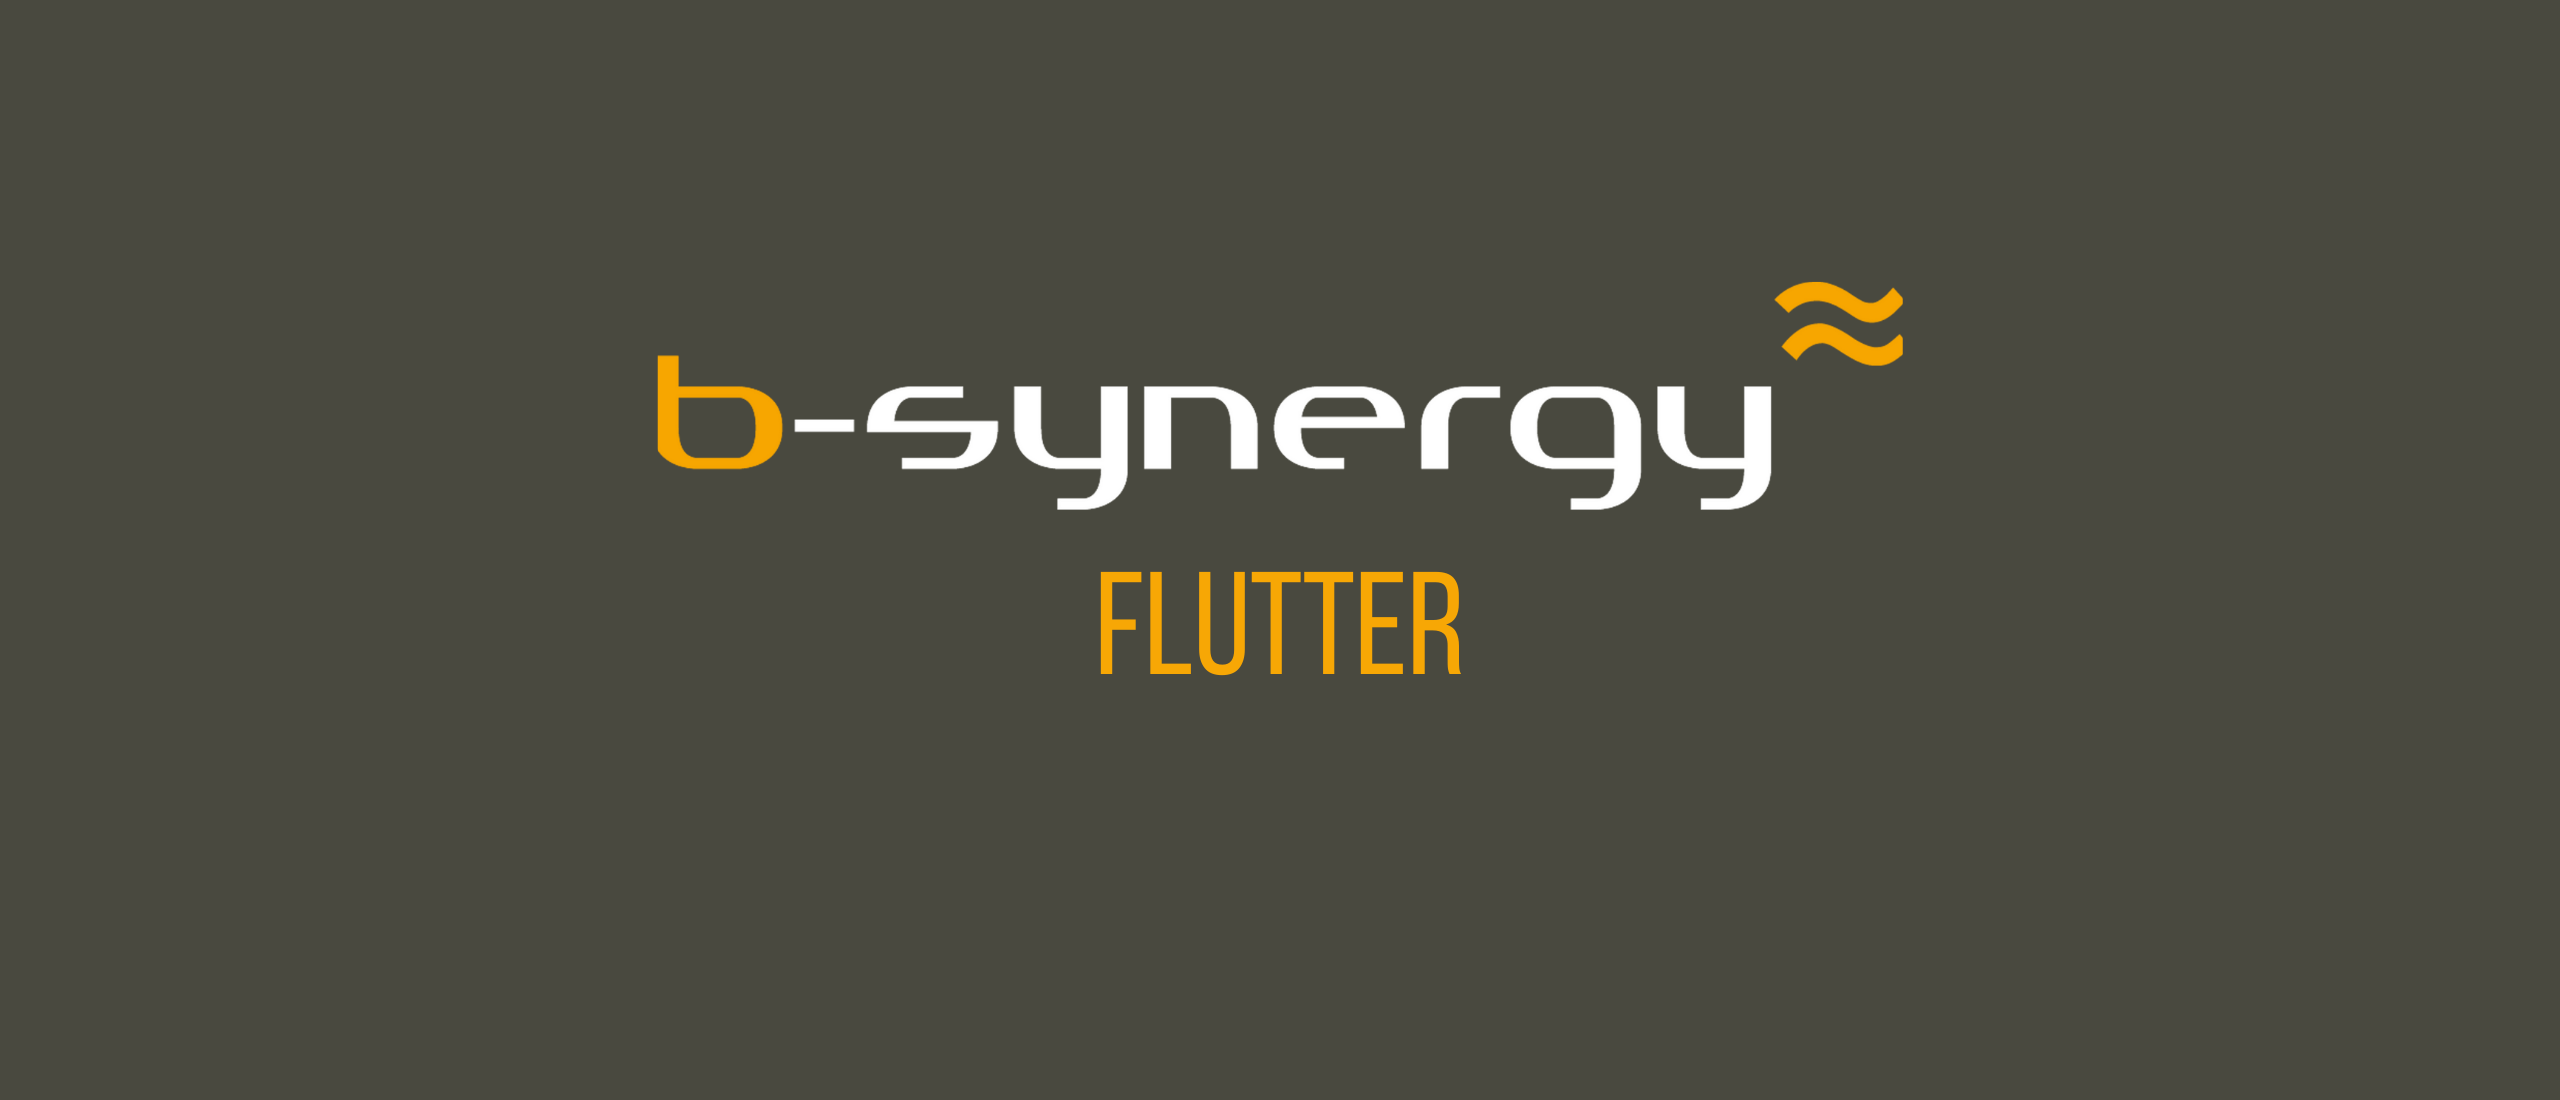 b-synergy flutter web dev